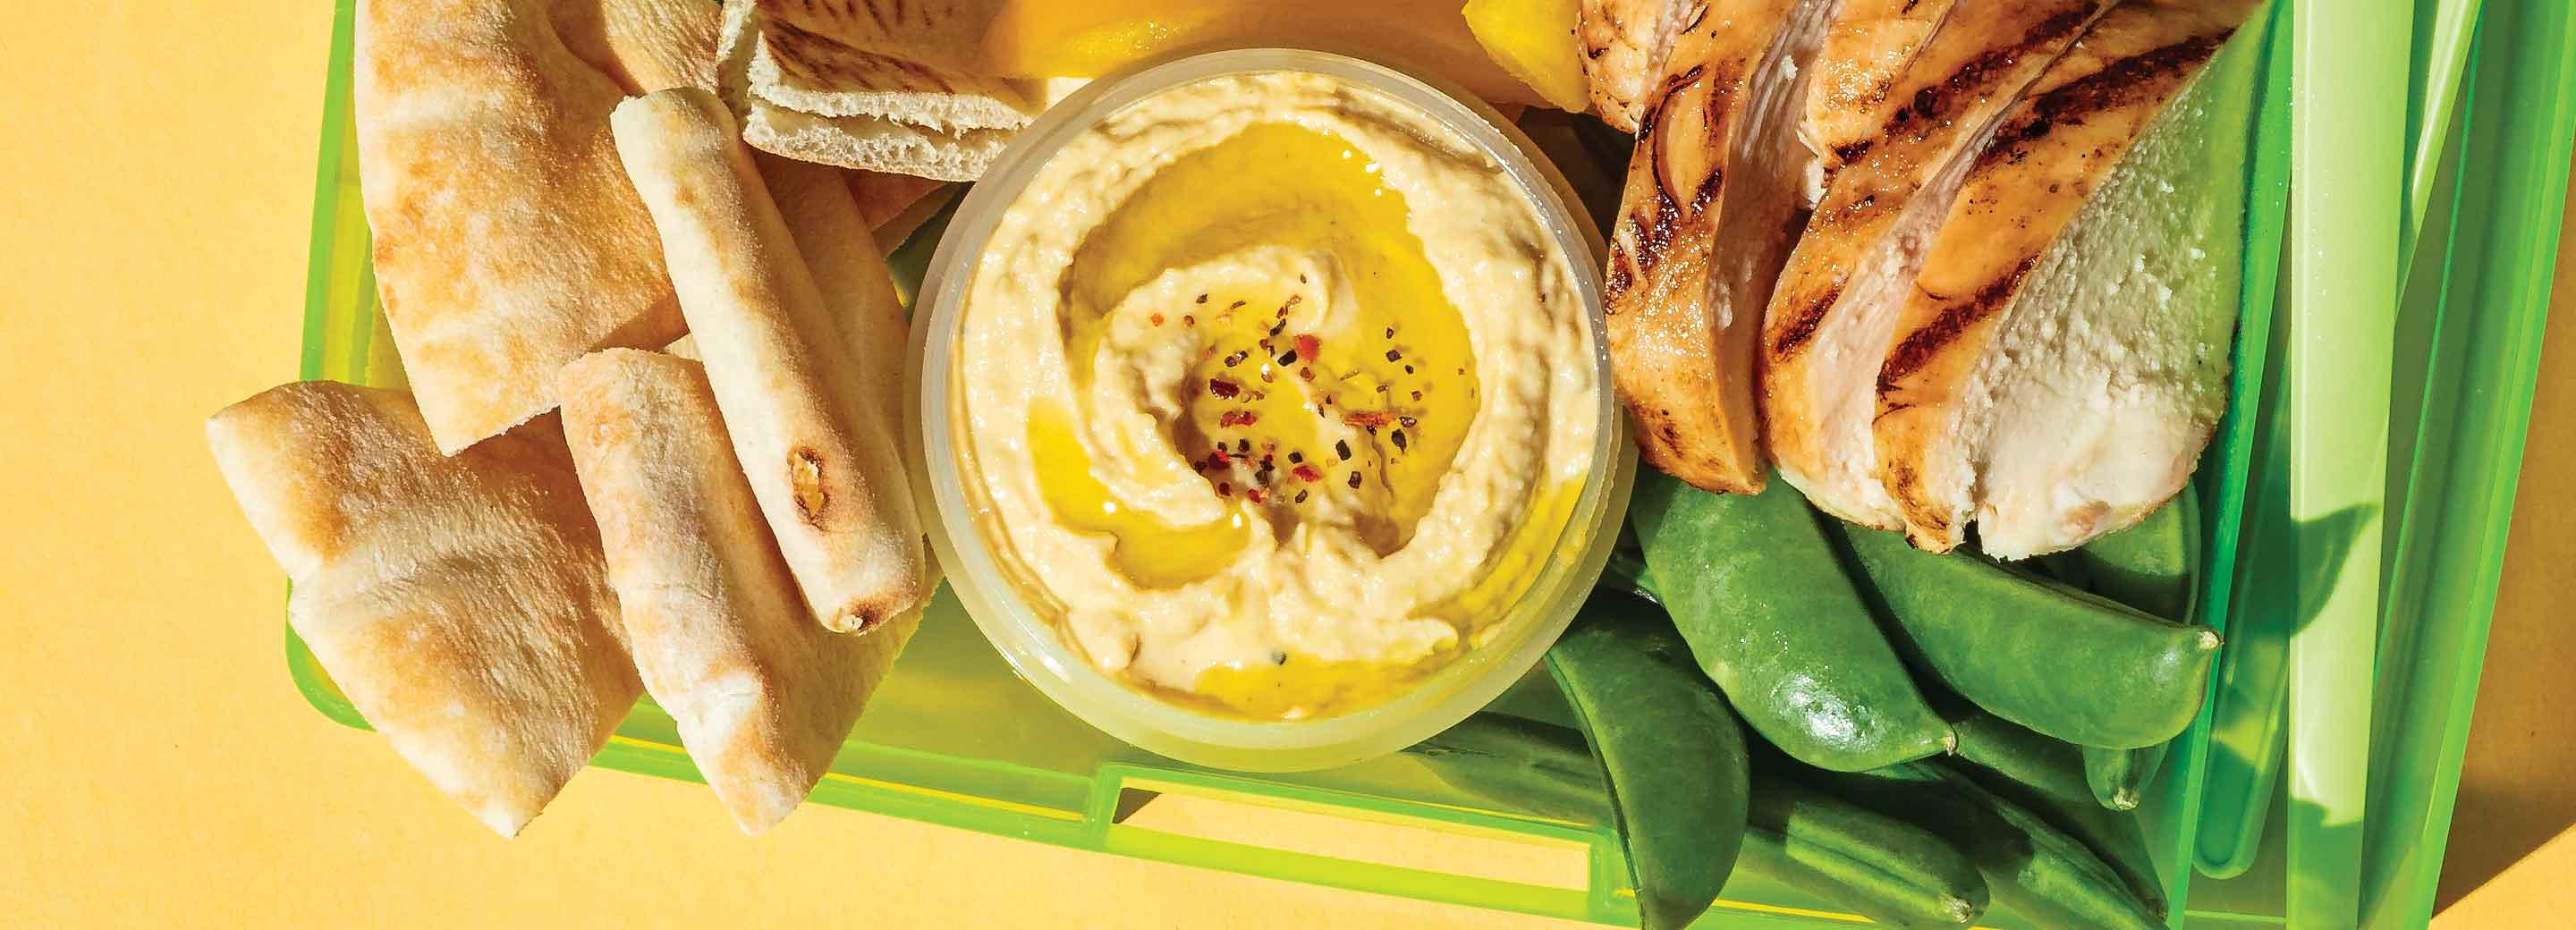 Simple Lunchbox Blender Hummus